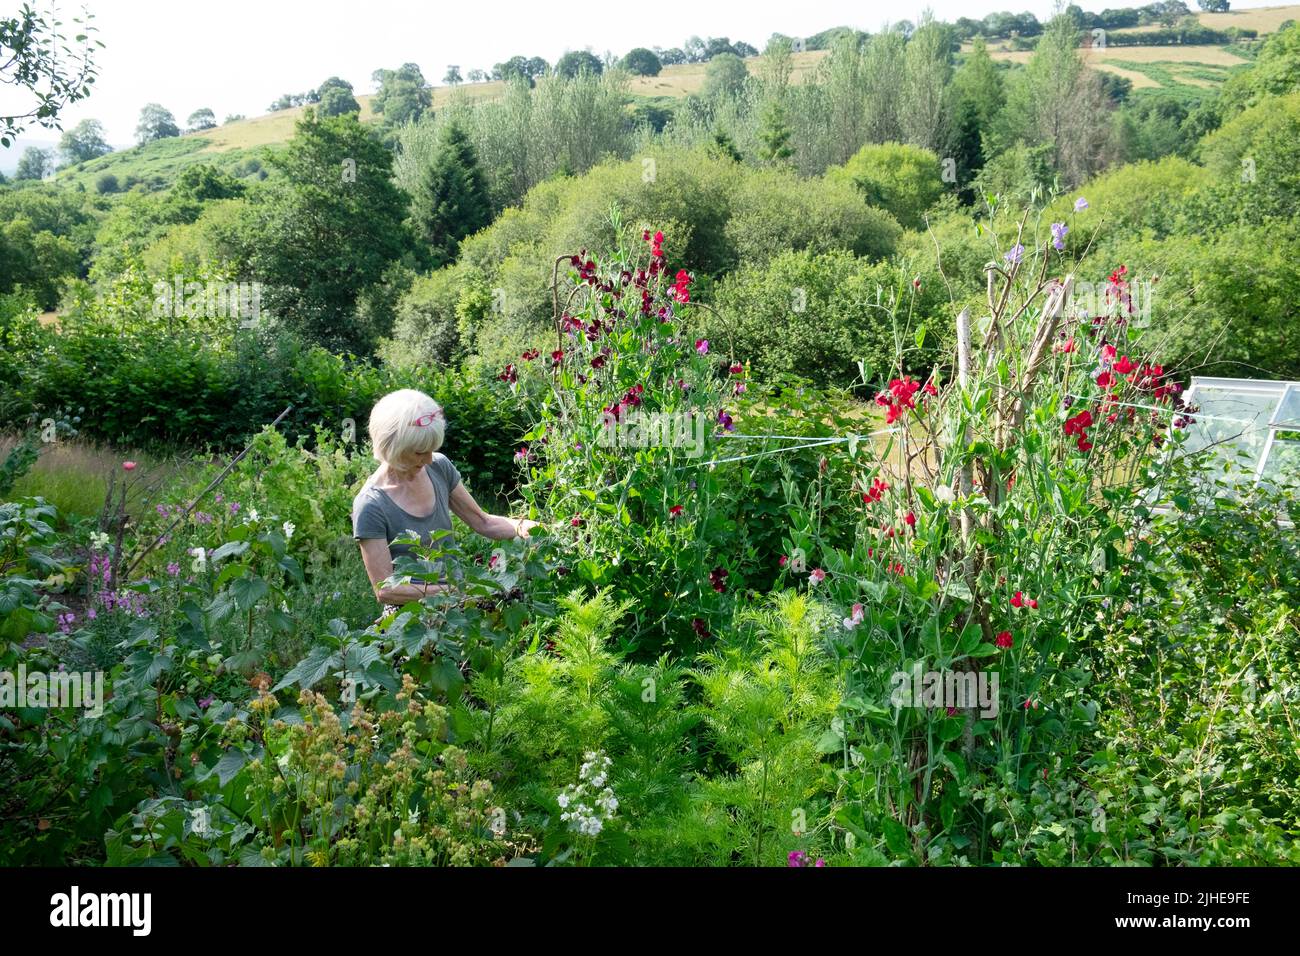 Ältere ältere ältere Frau im ländlichen Garten stehend Schneiden von süßen Erbsen Binden Stiele wächst im Sommer Juli Carmarthenshire Wales Großbritannien KATHY DEWITT Stockfoto